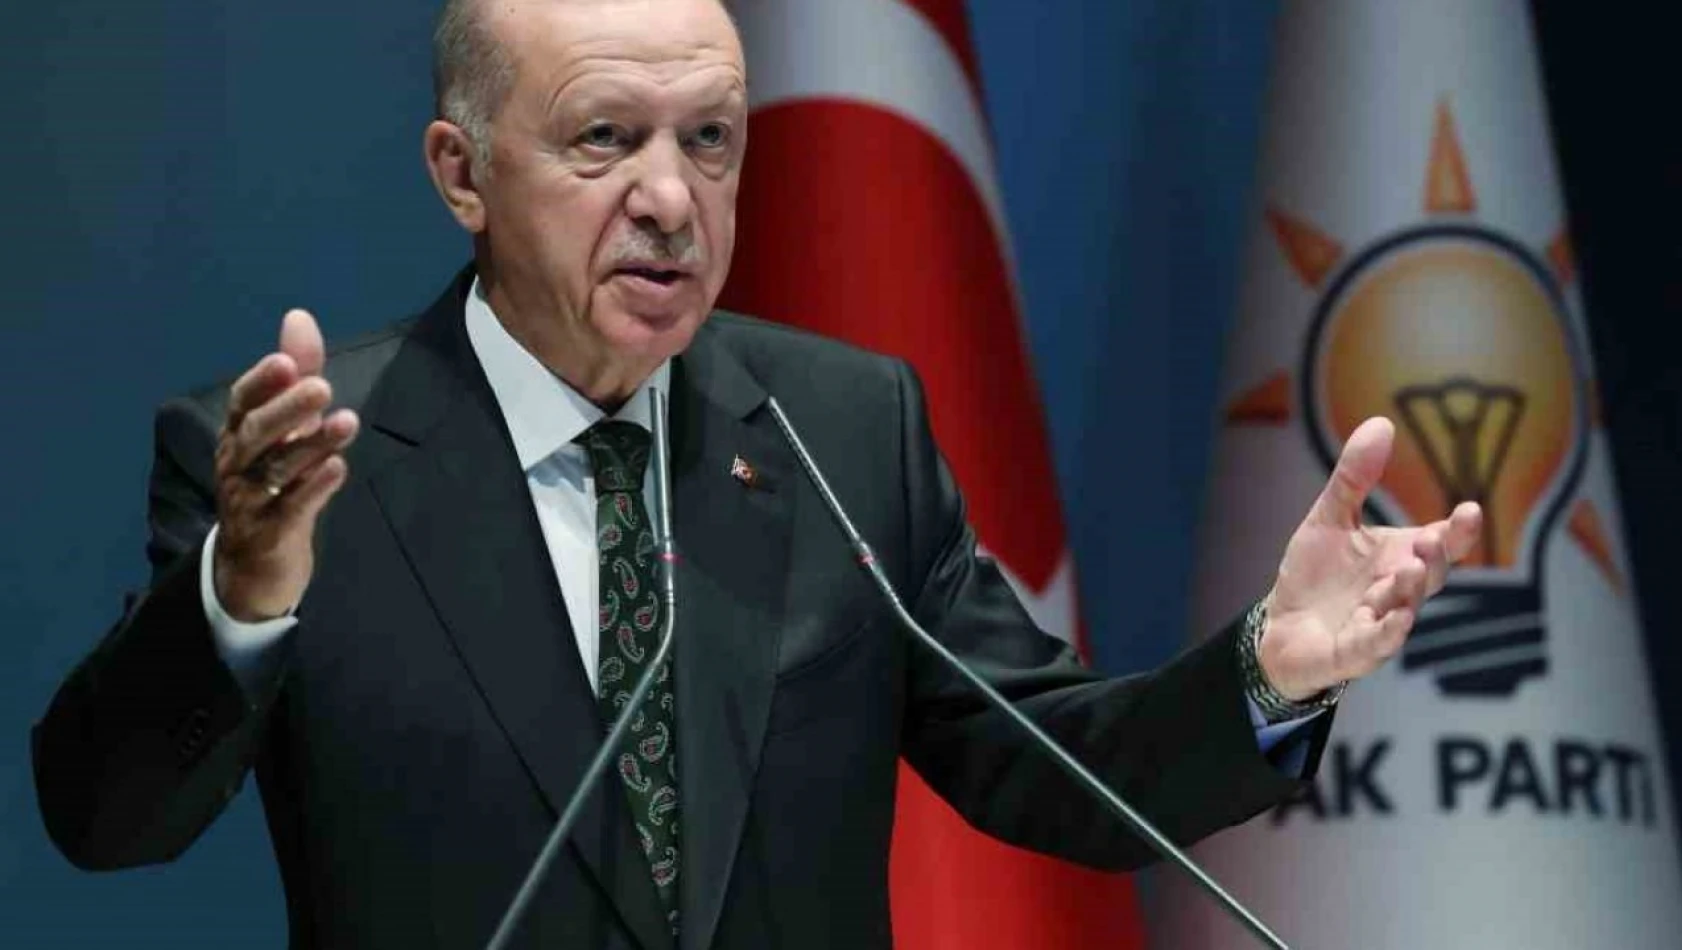 Cumhurbaşkanı Erdoğan: '31 Mart seçim sonuçlarını göz ardı etmiyoruz. Sonuçlara dair kapsamlı iç muhasebemizi partimizin yetkili organlarında yaptık, yapıyoruz ve yapacağız'